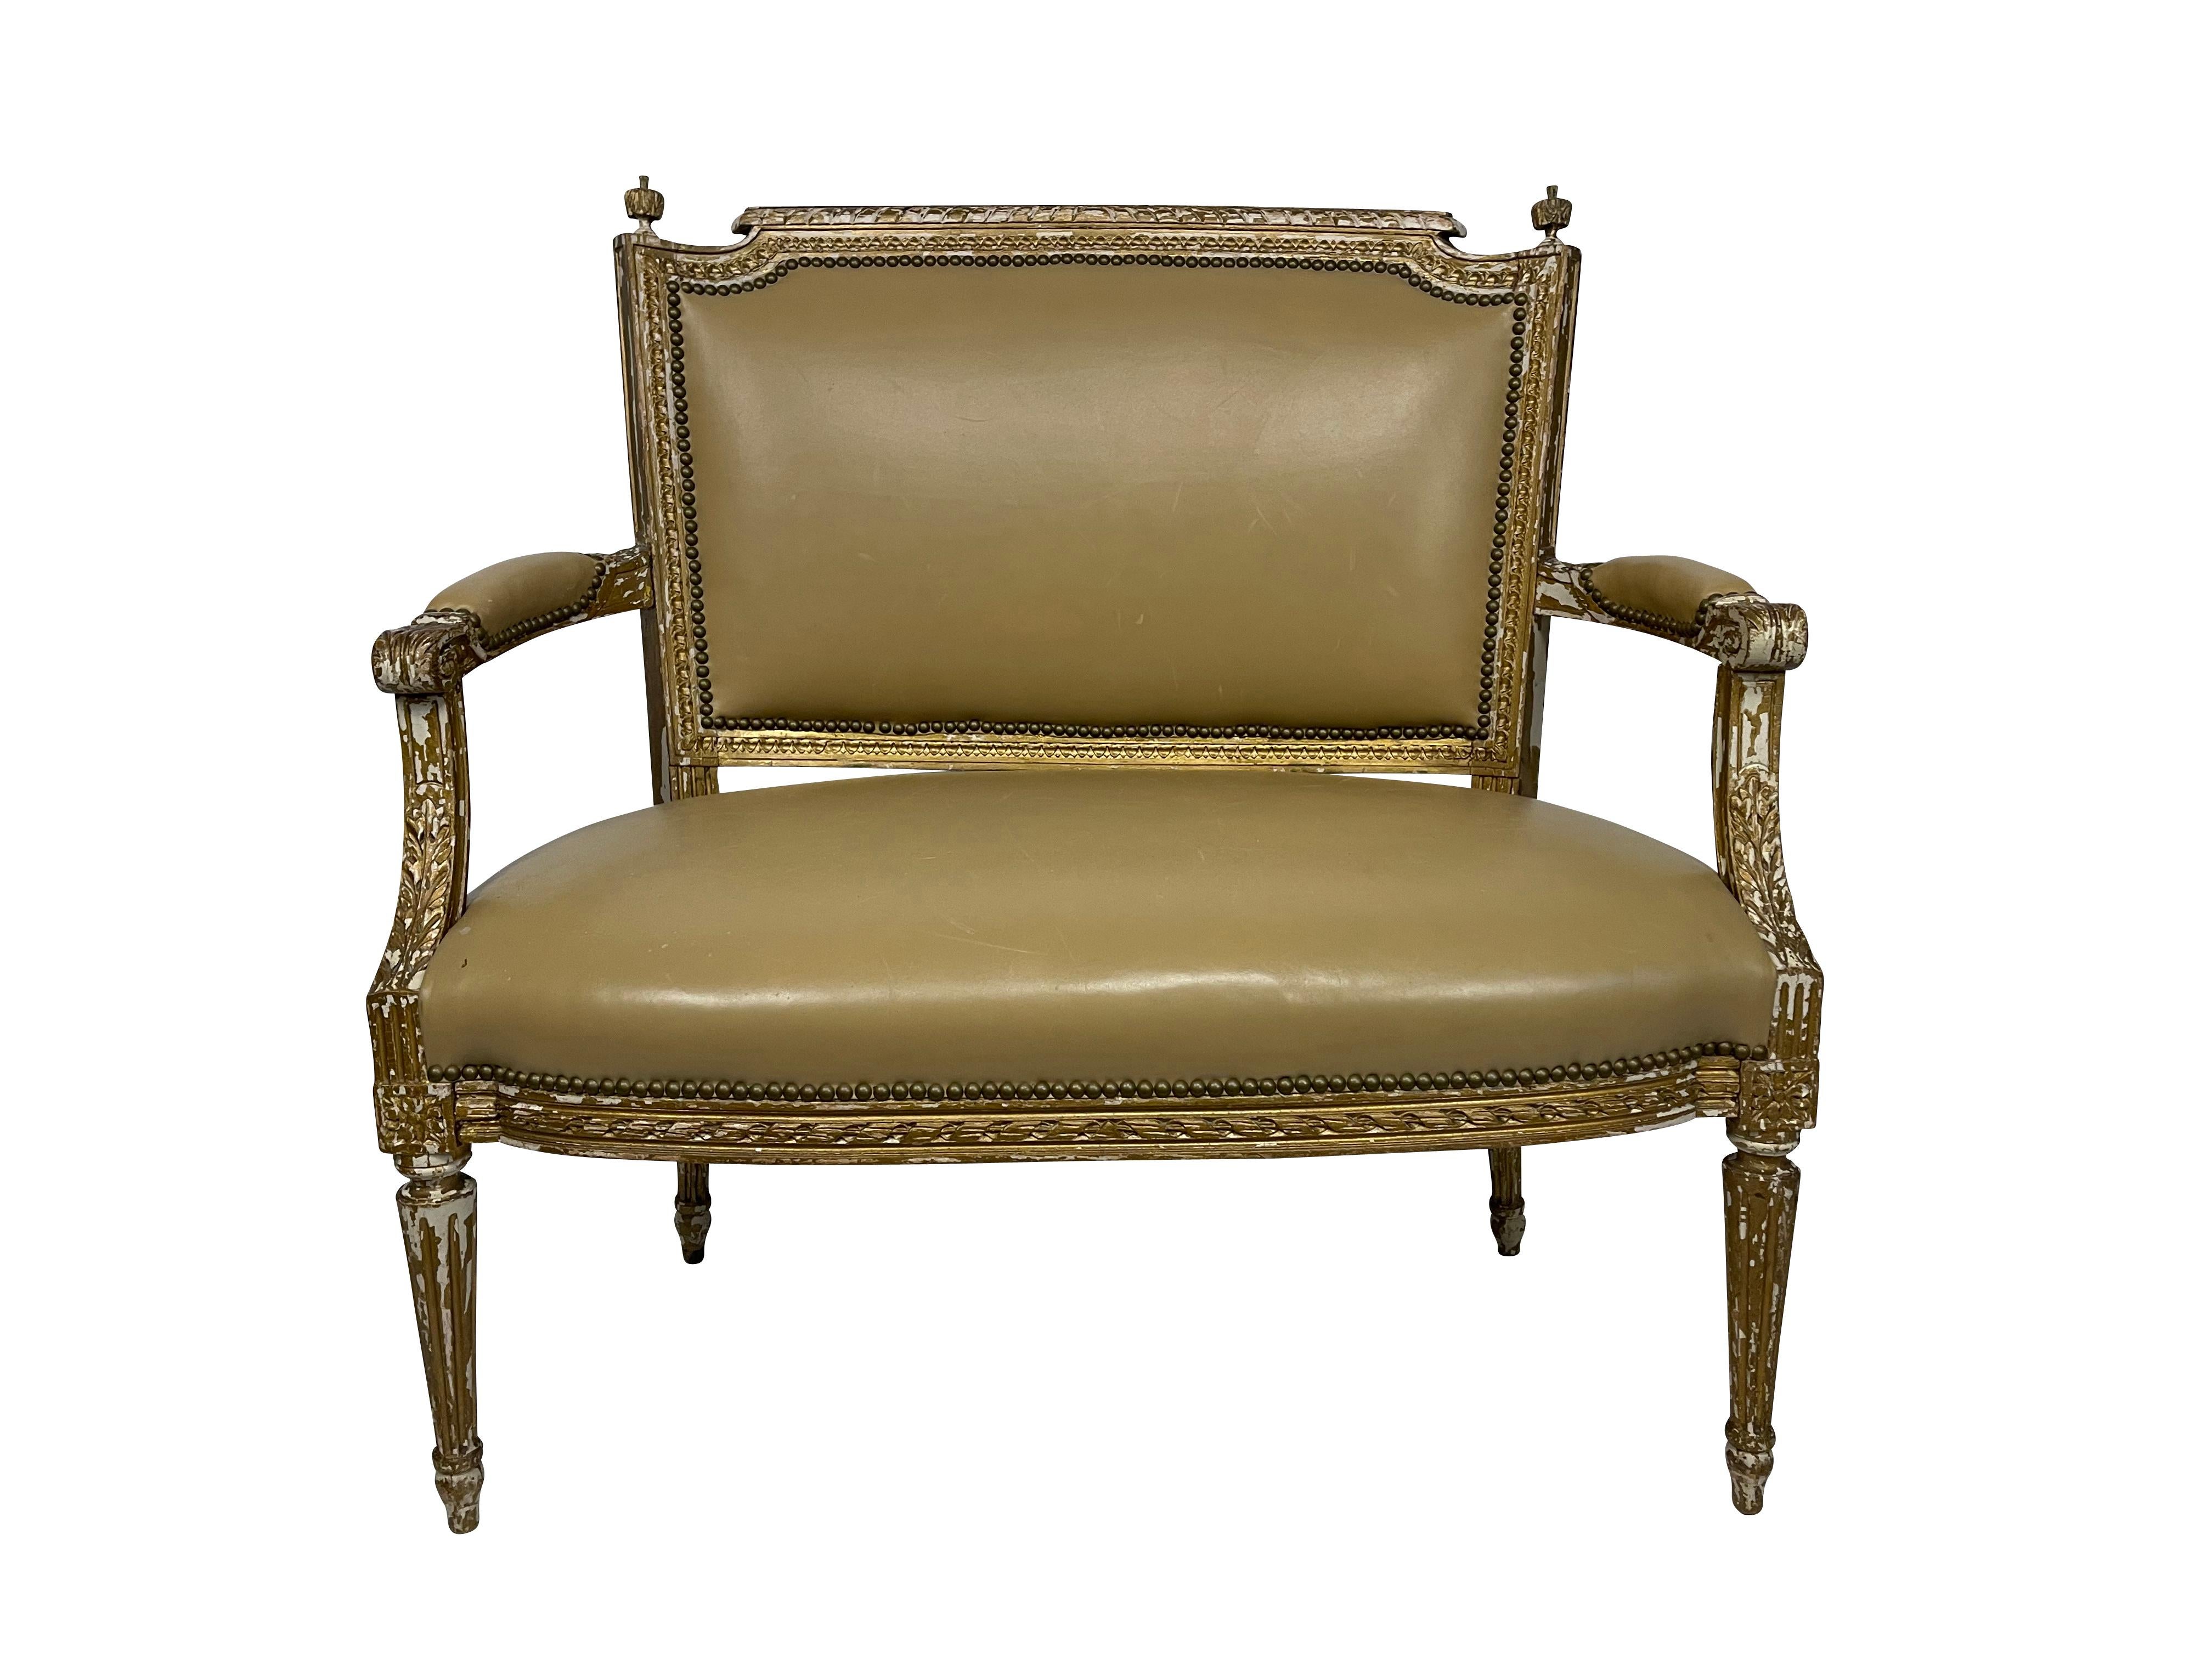 italienisches Sofa aus dem 19. Jahrhundert, klassisch bemalt und mit originalem hellbraunem Leder bezogen, mit Nagelköpfen verziert. Perfekte Größe für ein kleines Foyer oder einen Eingangsbereich. Tolle Patina und gerade genug Farbverlust.